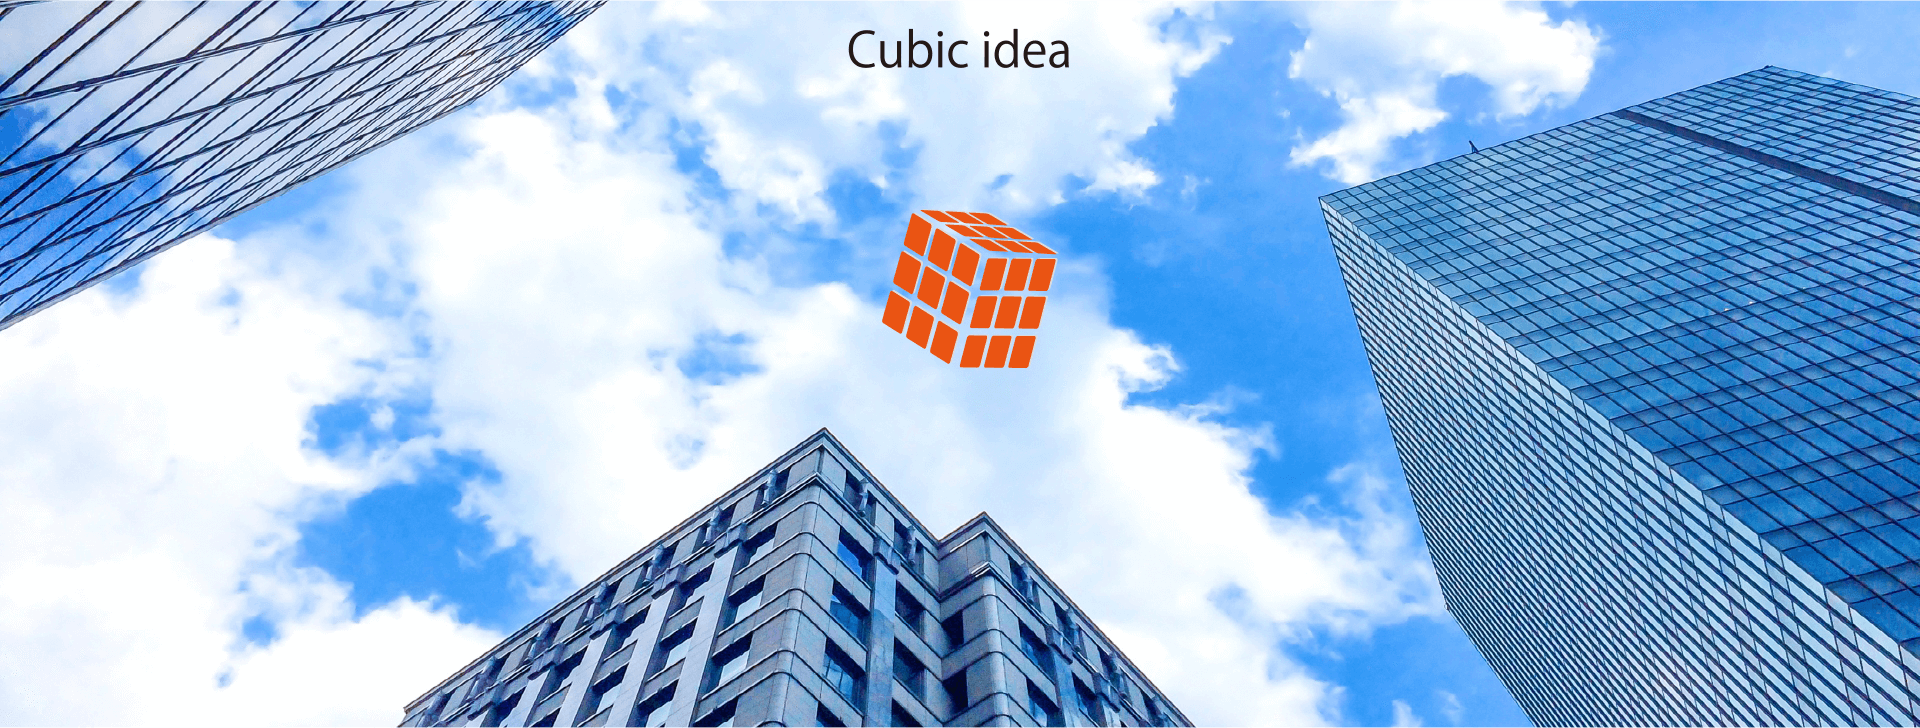 Cubic idea